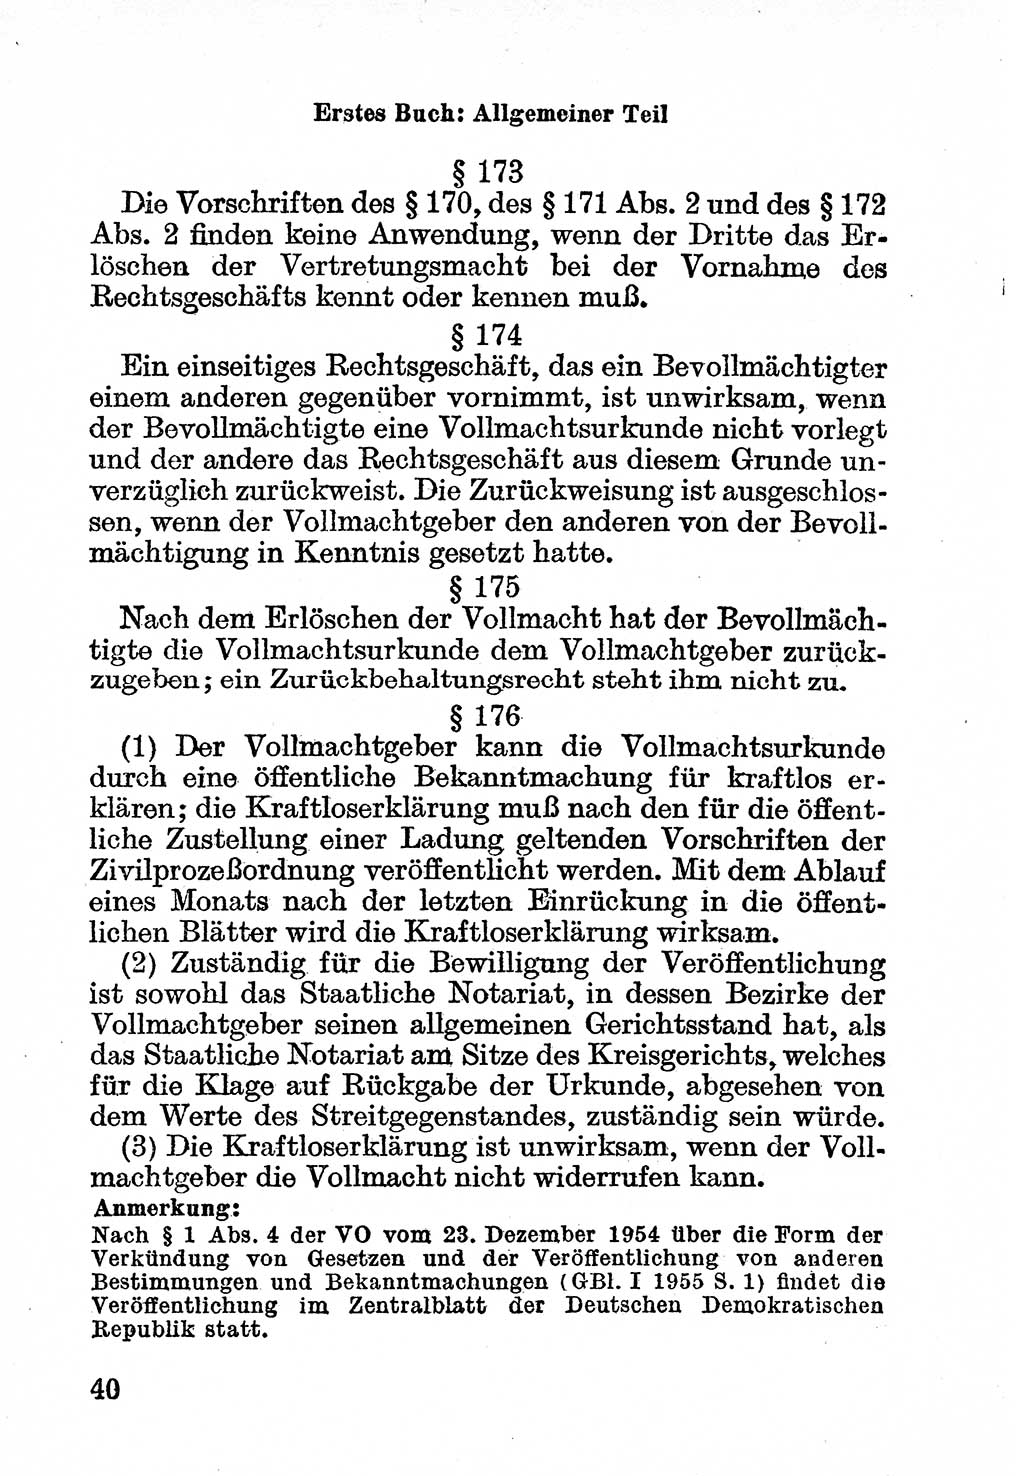 Bürgerliches Gesetzbuch (BGB) nebst wichtigen Nebengesetzen [Deutsche Demokratische Republik (DDR)] 1956, Seite 40 (BGB Nebenges. DDR 1956, S. 40)